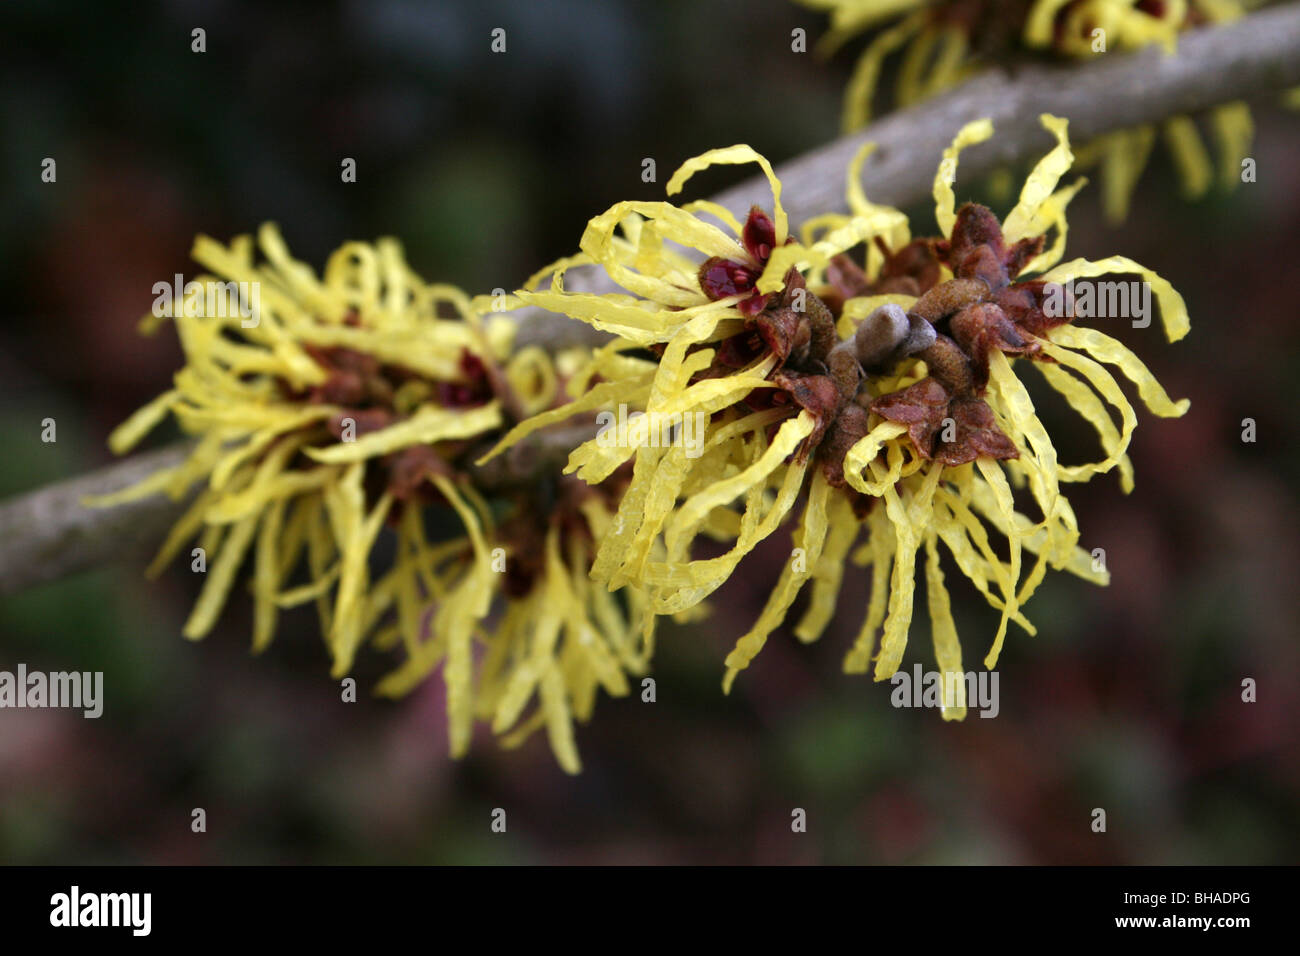 Fiori gialli di amamelide Hamamelis specie prese a Ellesmere, Shropshire, Regno Unito Foto Stock